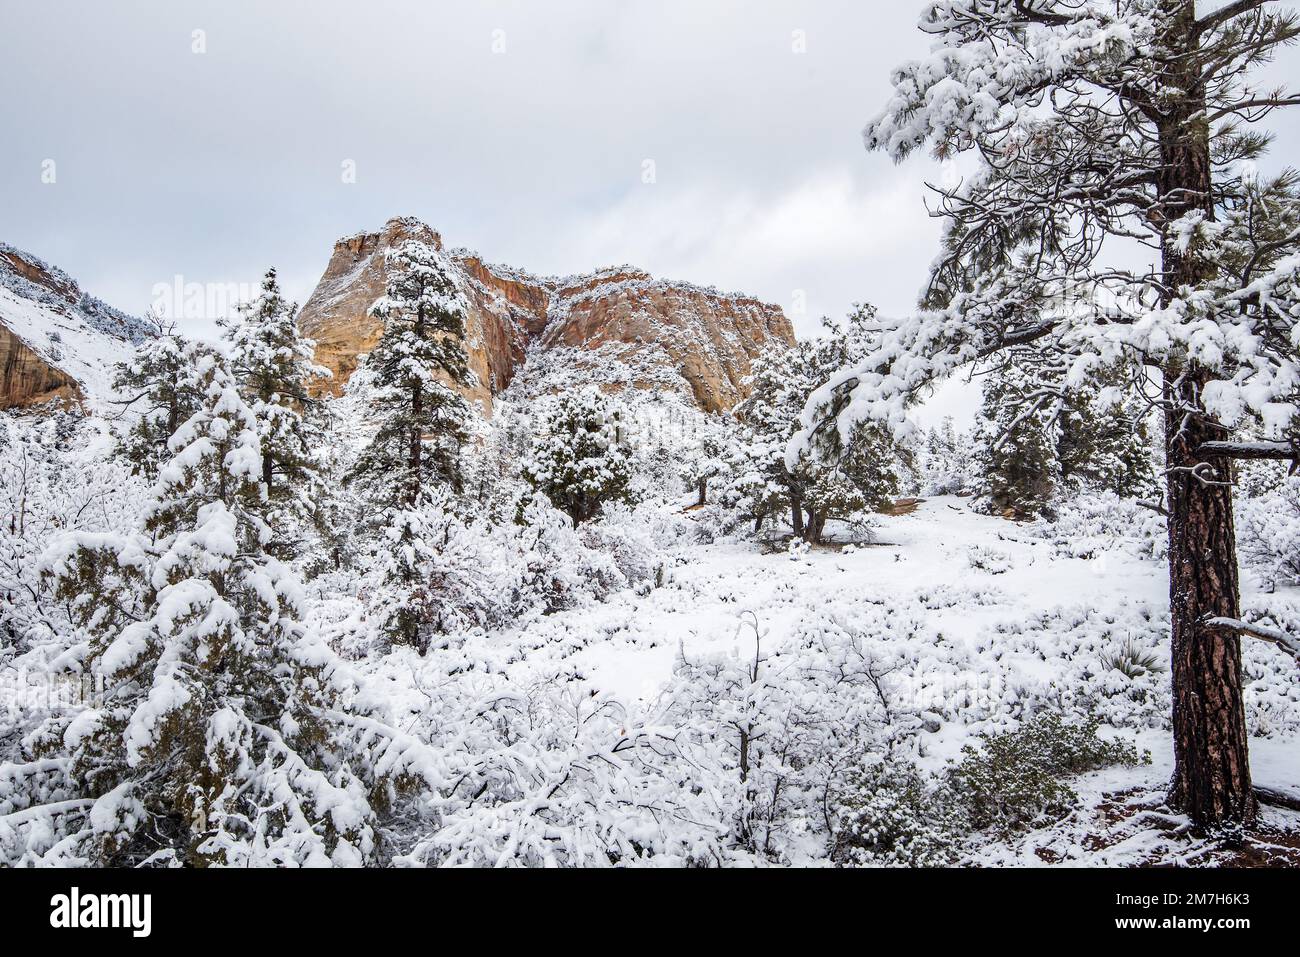 Schneefall im Winter im Zions-Nationalpark, Utah, USA. Dieser herrliche Park verwandelt sich nach einem schweren Sturm in ein Winterwunderland. Stockfoto